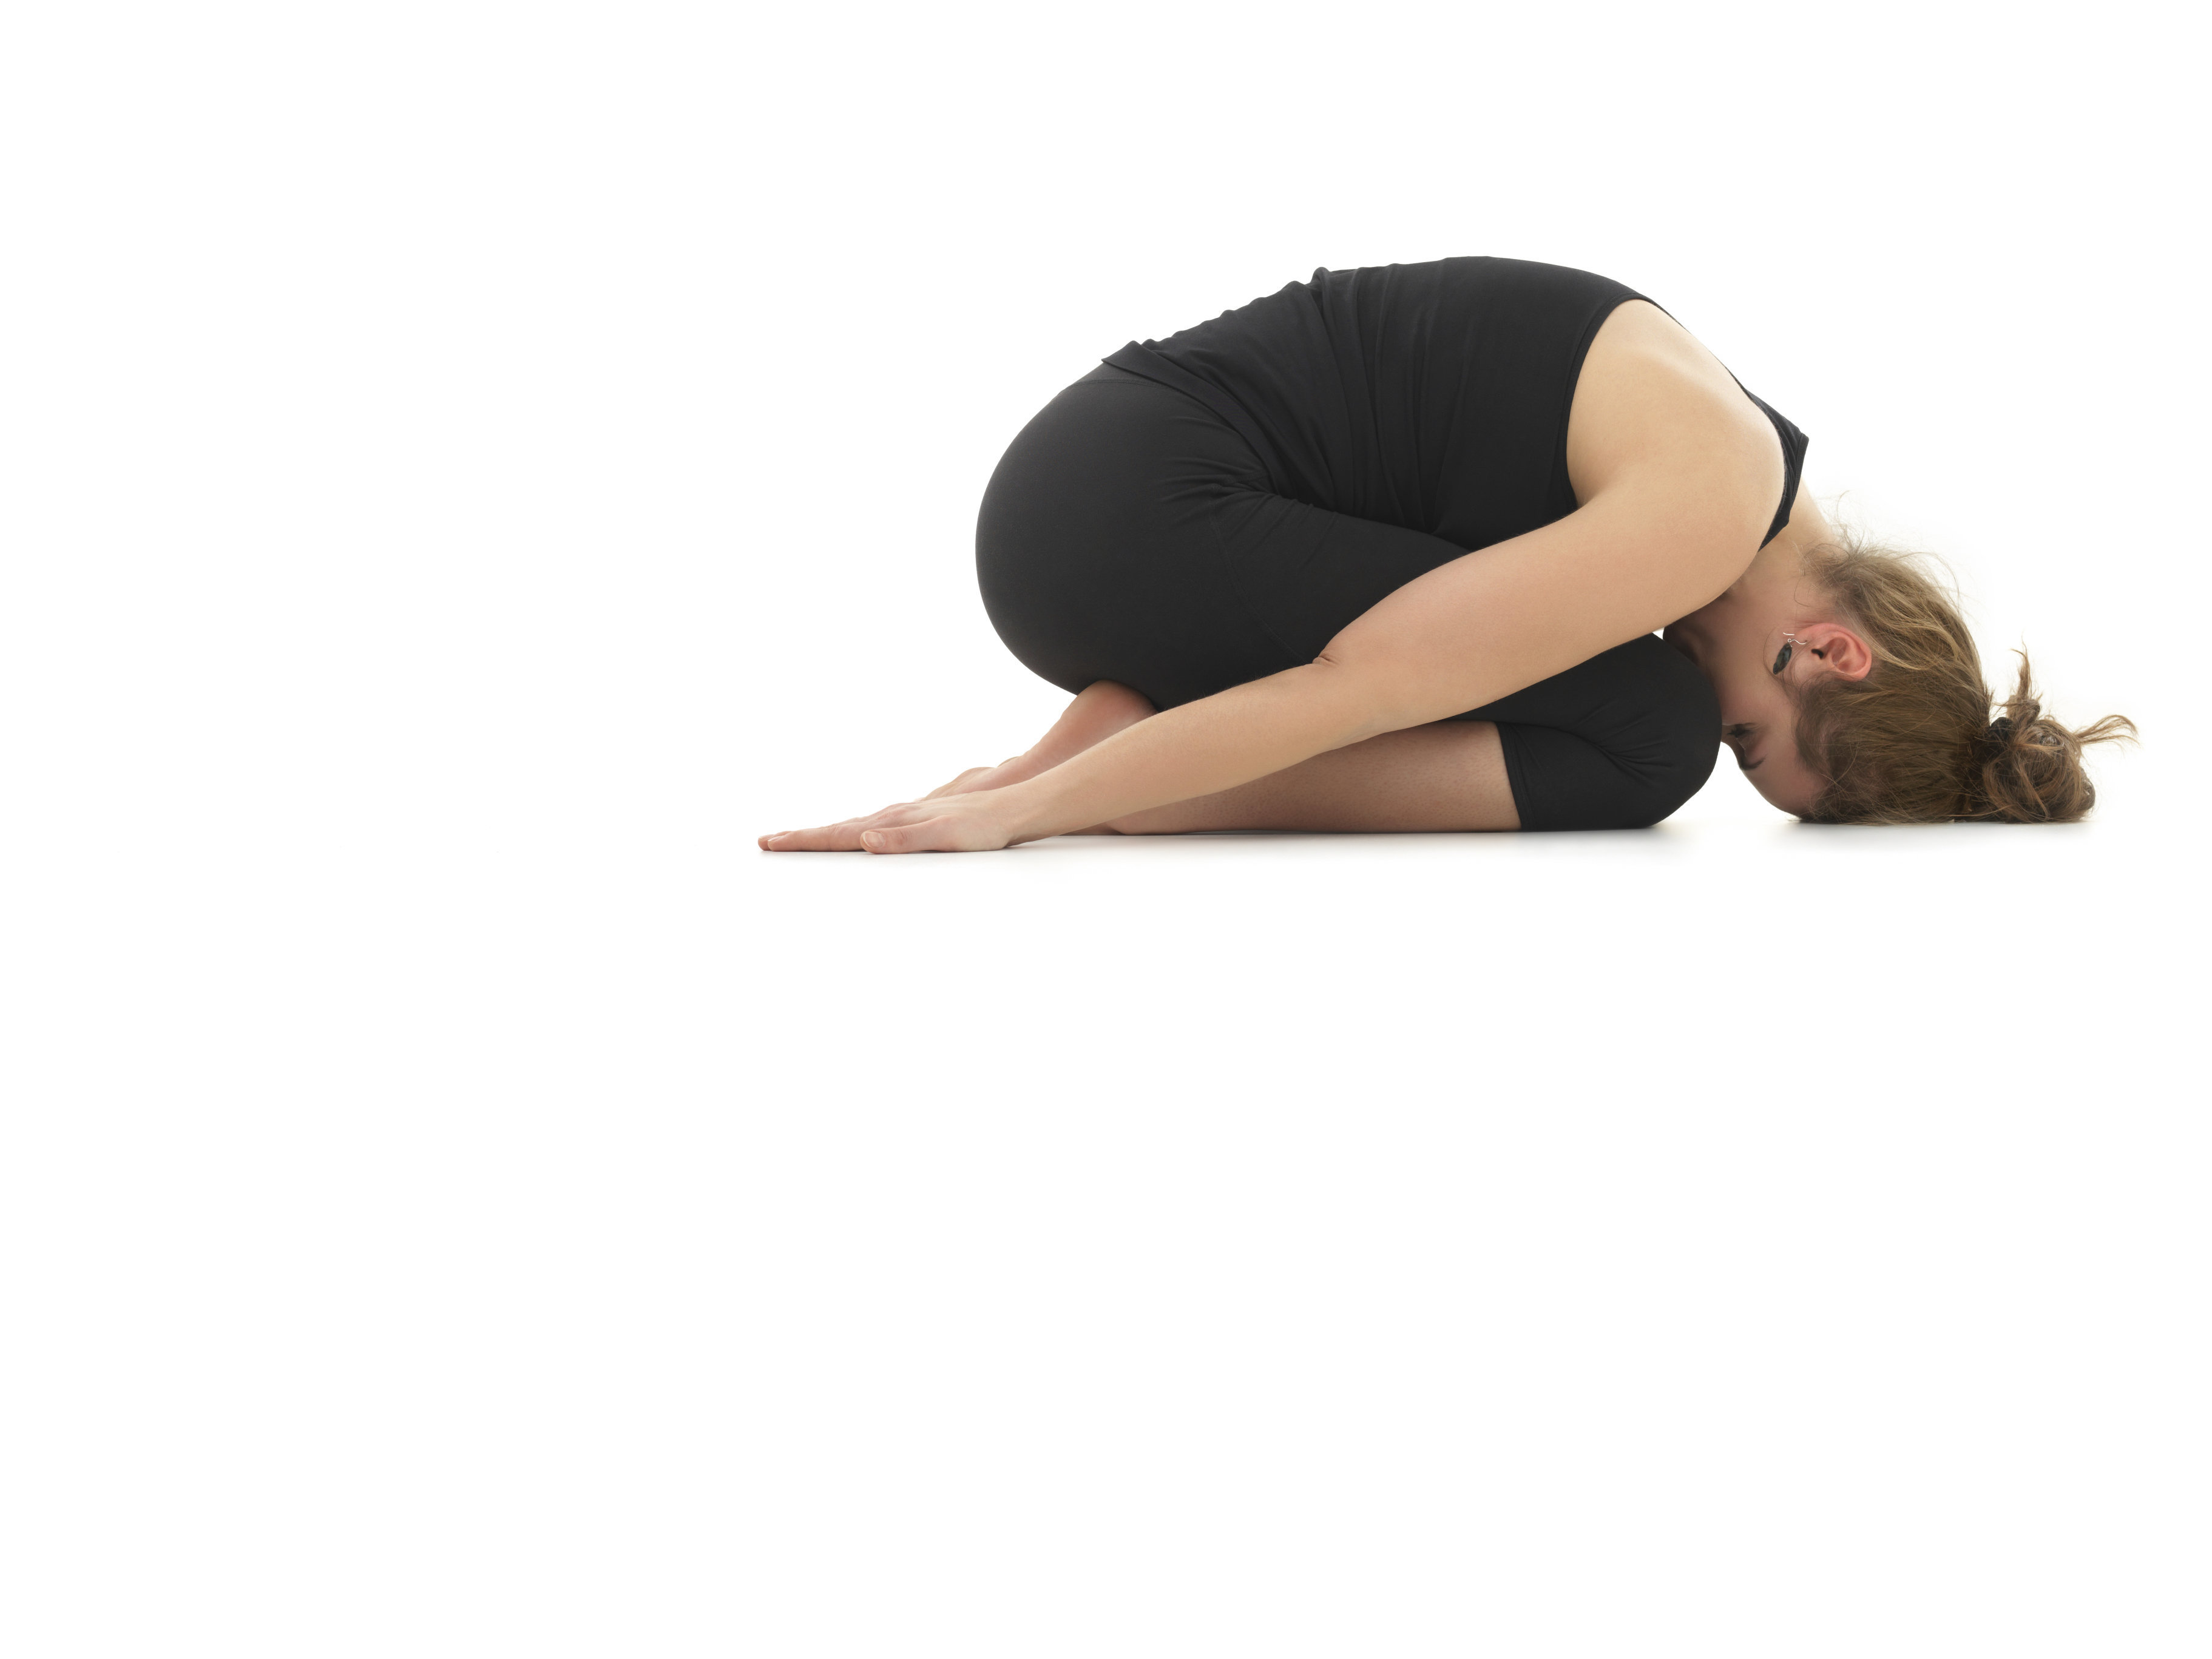 Nadi X: high-tech yoga pants correct your pose for you